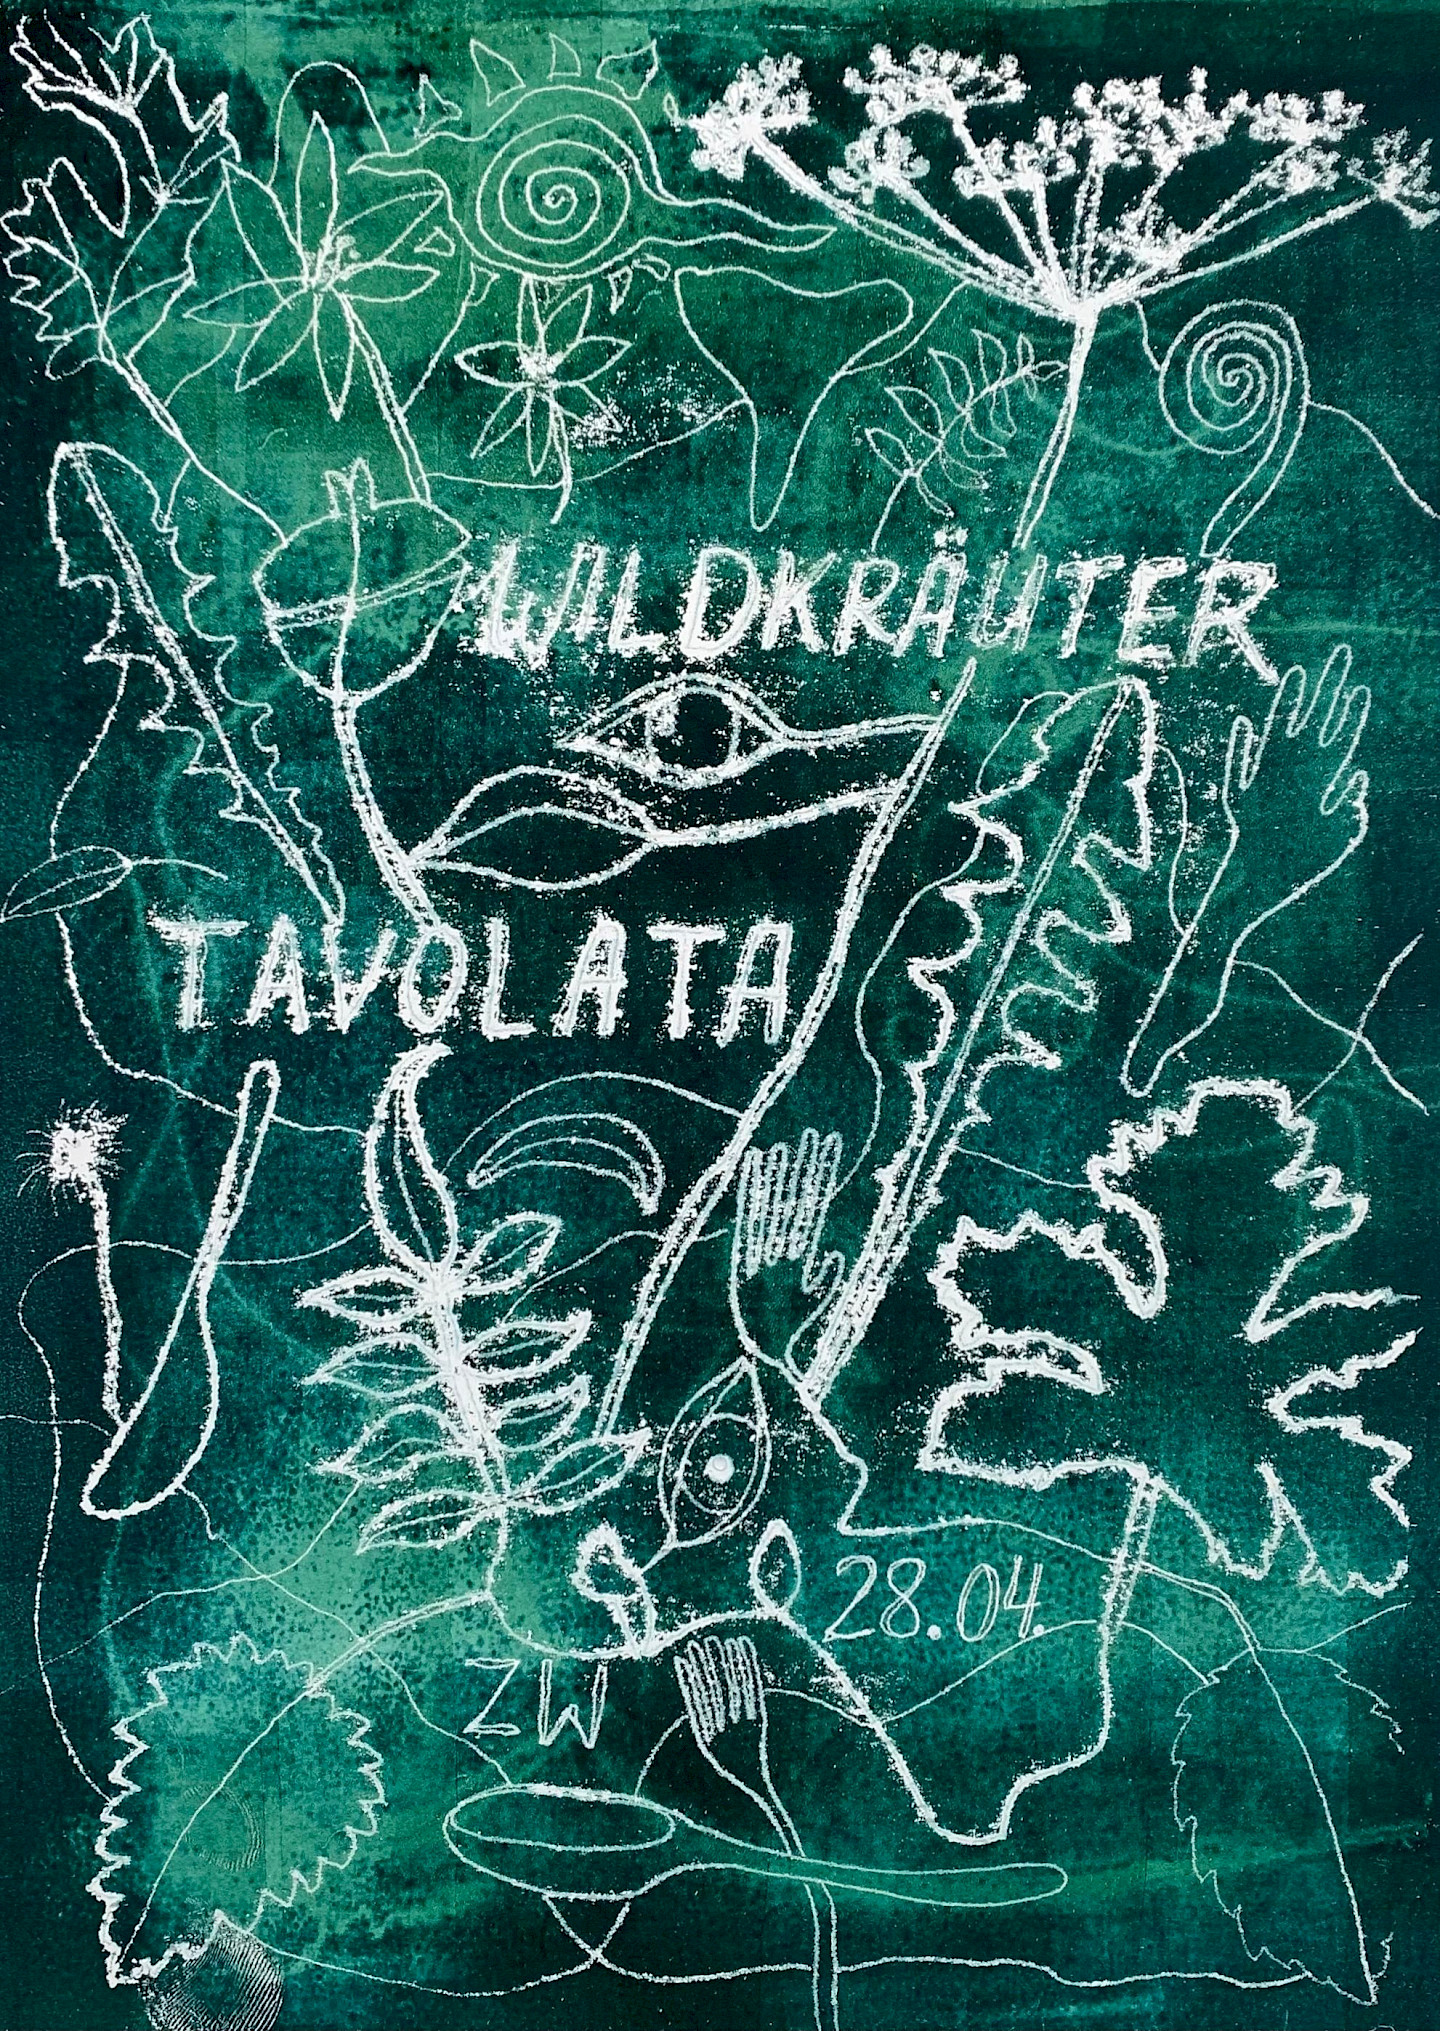 Wildkräuter Tavola